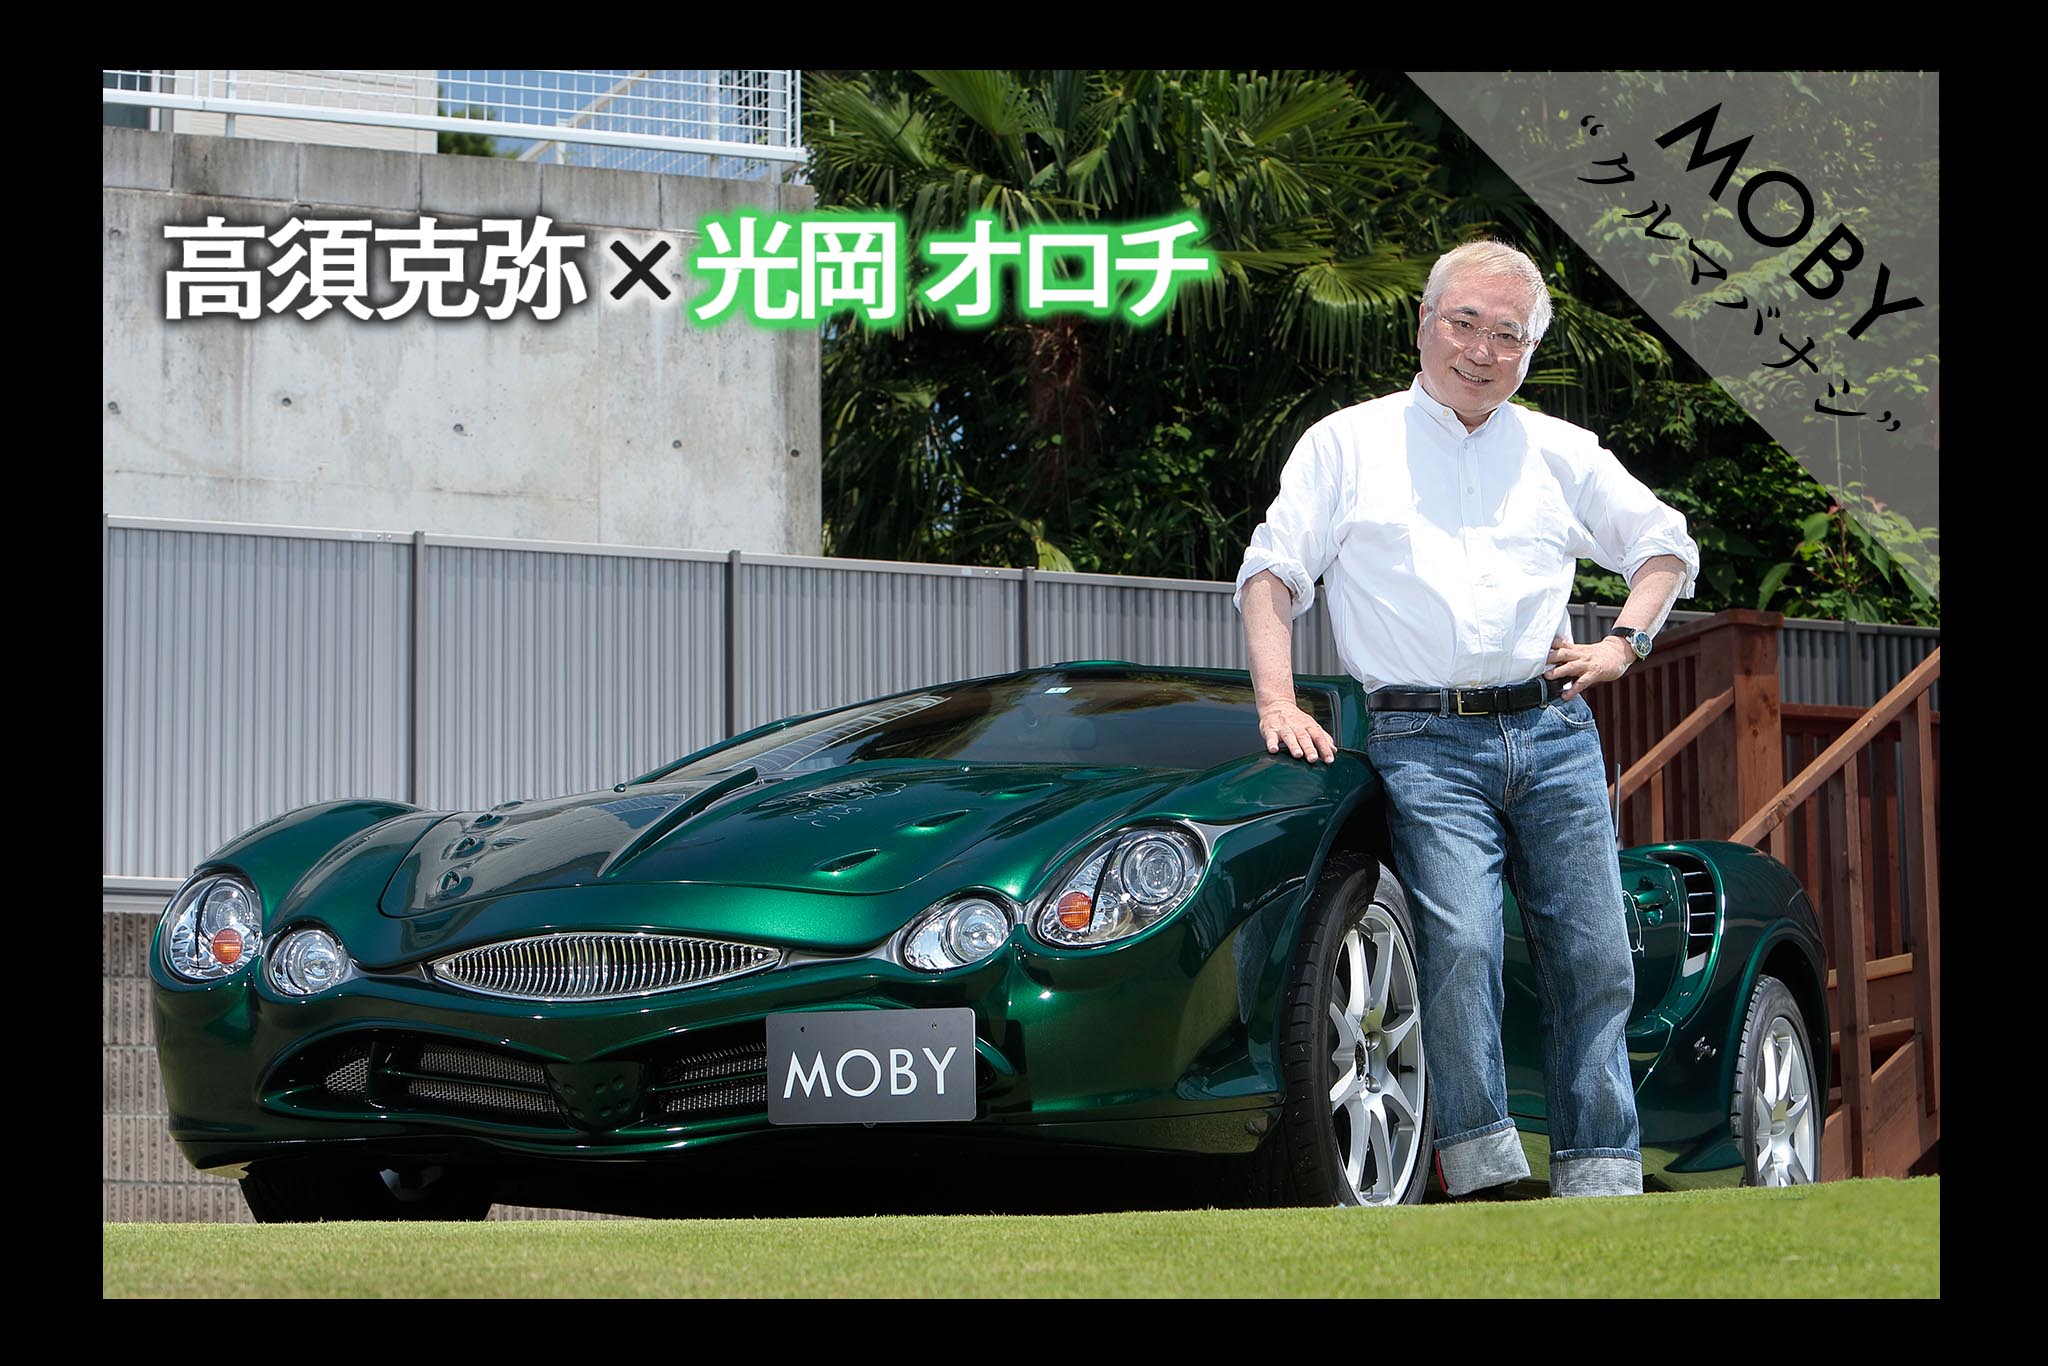 54 高須克弥 光岡 オロチ Vol 1 一目惚れした車は即購入 Mobyクルマバナシ Moby モビー